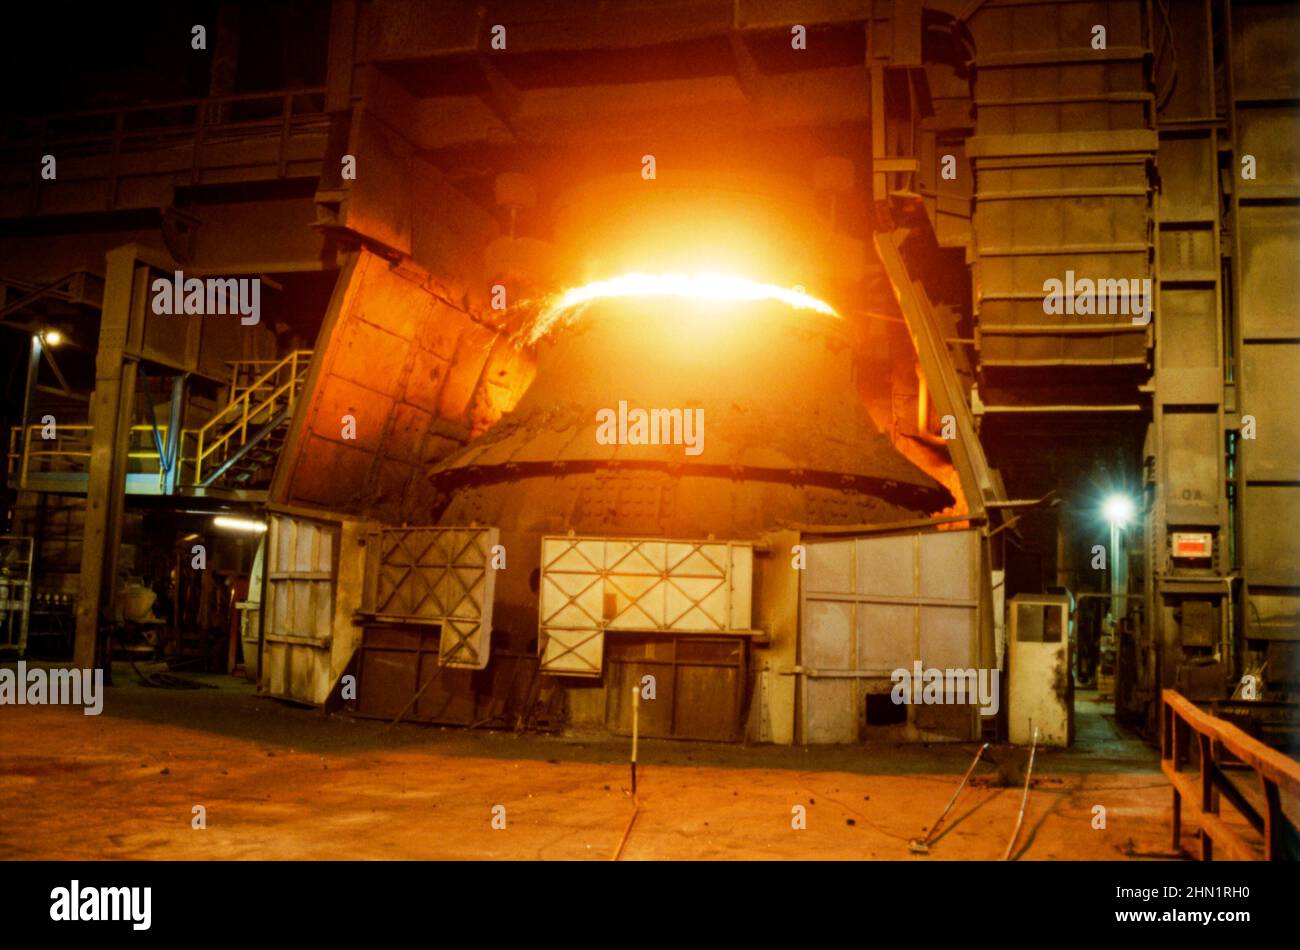 Una vista de mediados de 1980s dentro de Port Talbot Steelworks, una planta integrada de producción de acero en Port Talbot, West Glamorgan, Gales, Reino Unido. Aquí uno de los hornos gigantes es alimentado por carbón. Esta imagen es de una transparencia de color vintage tomada por un fotógrafo visitante, una fotografía de 1980s años. Foto de stock